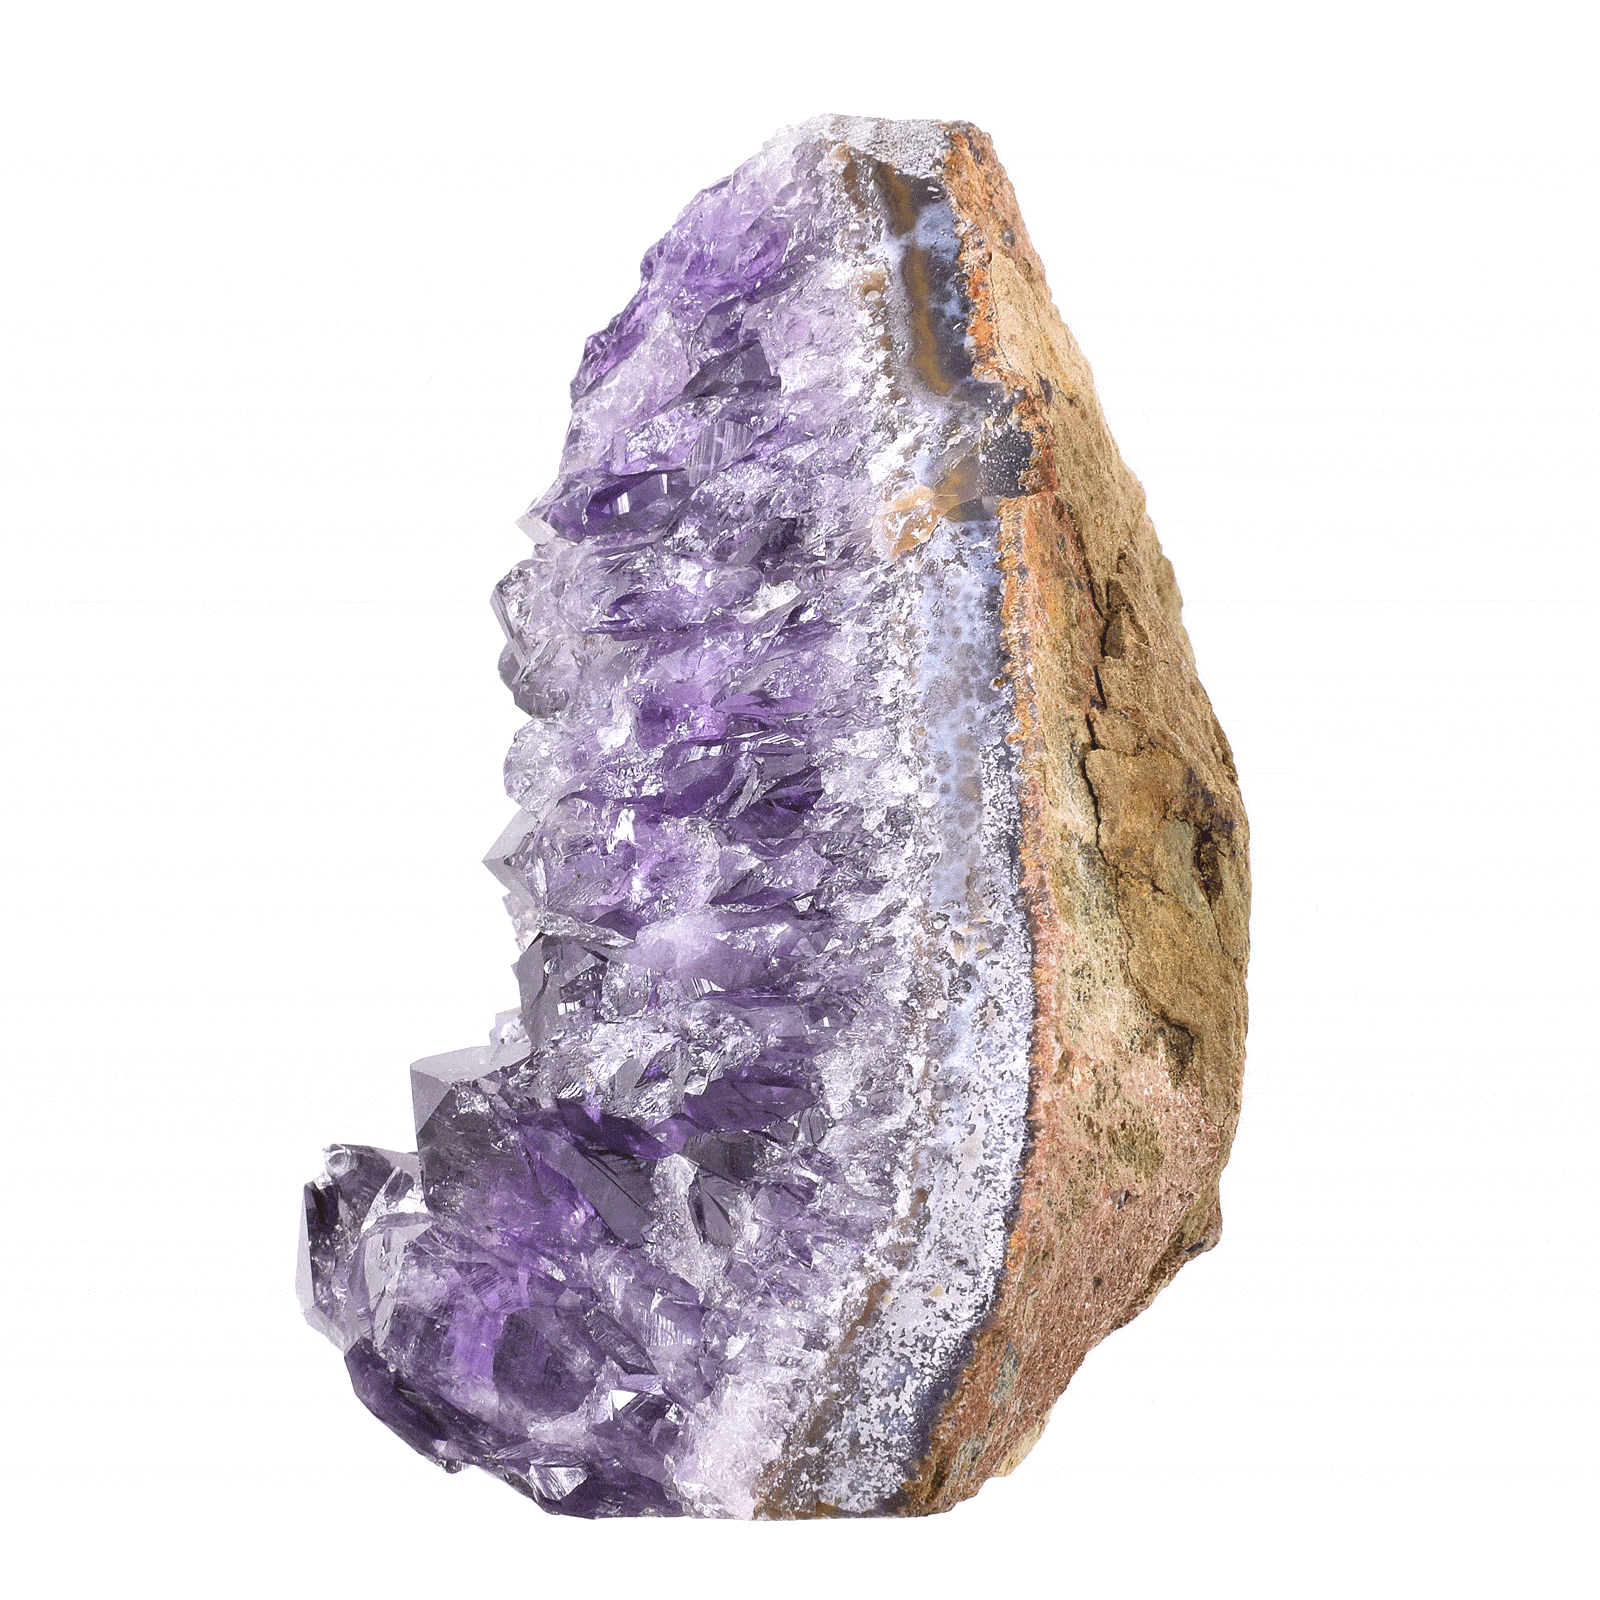 Ακατέργαστο κομμάτι φυσικής πέτρας Αμεθύστου, ύψους 9cm. Αγοράστε online shop.